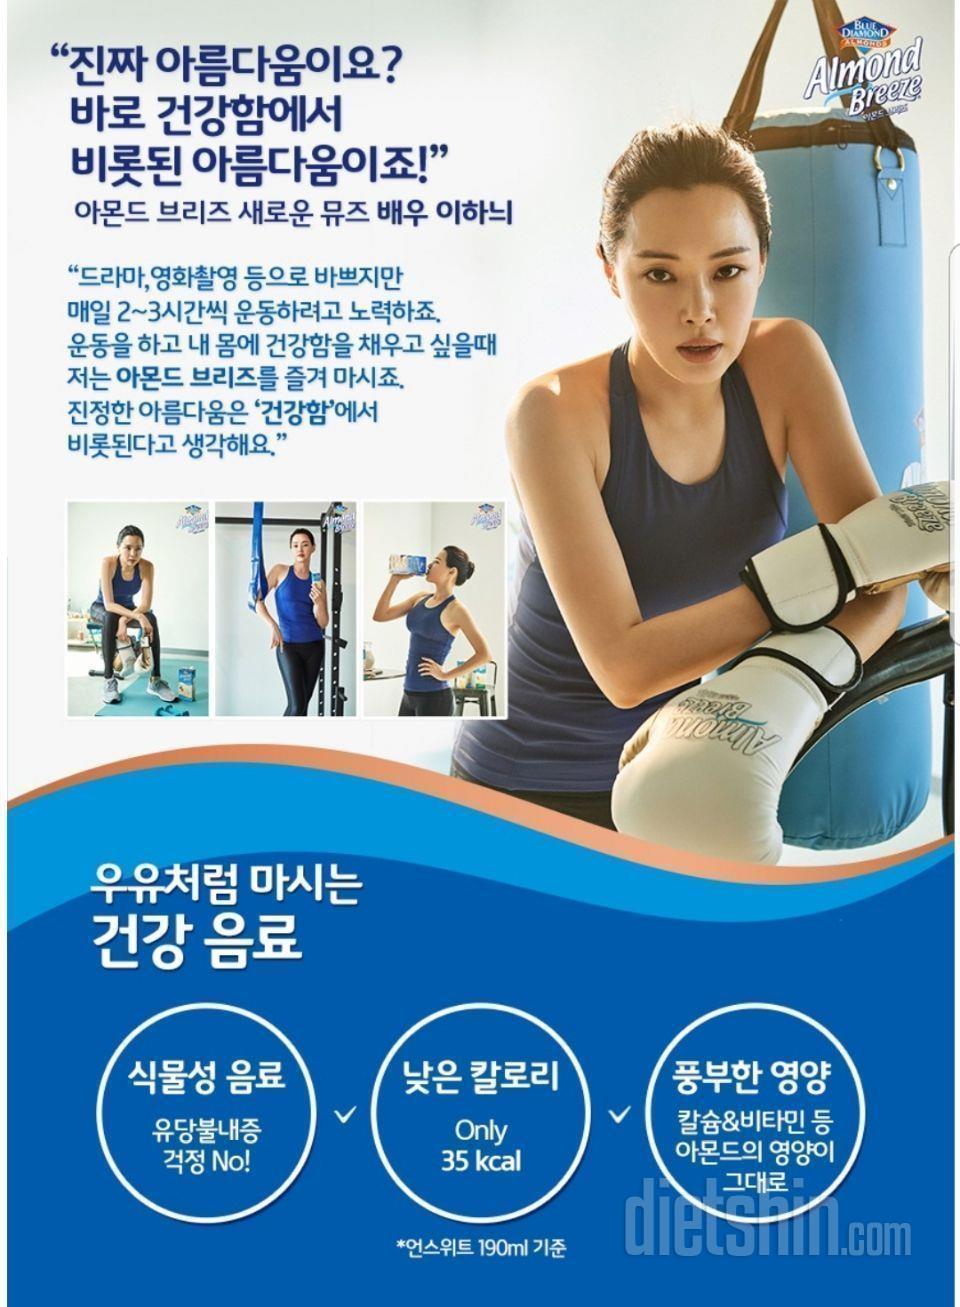 ⚄이하늬음료 아몬드브리즈 체험후기 5탄(최종후기)⚄